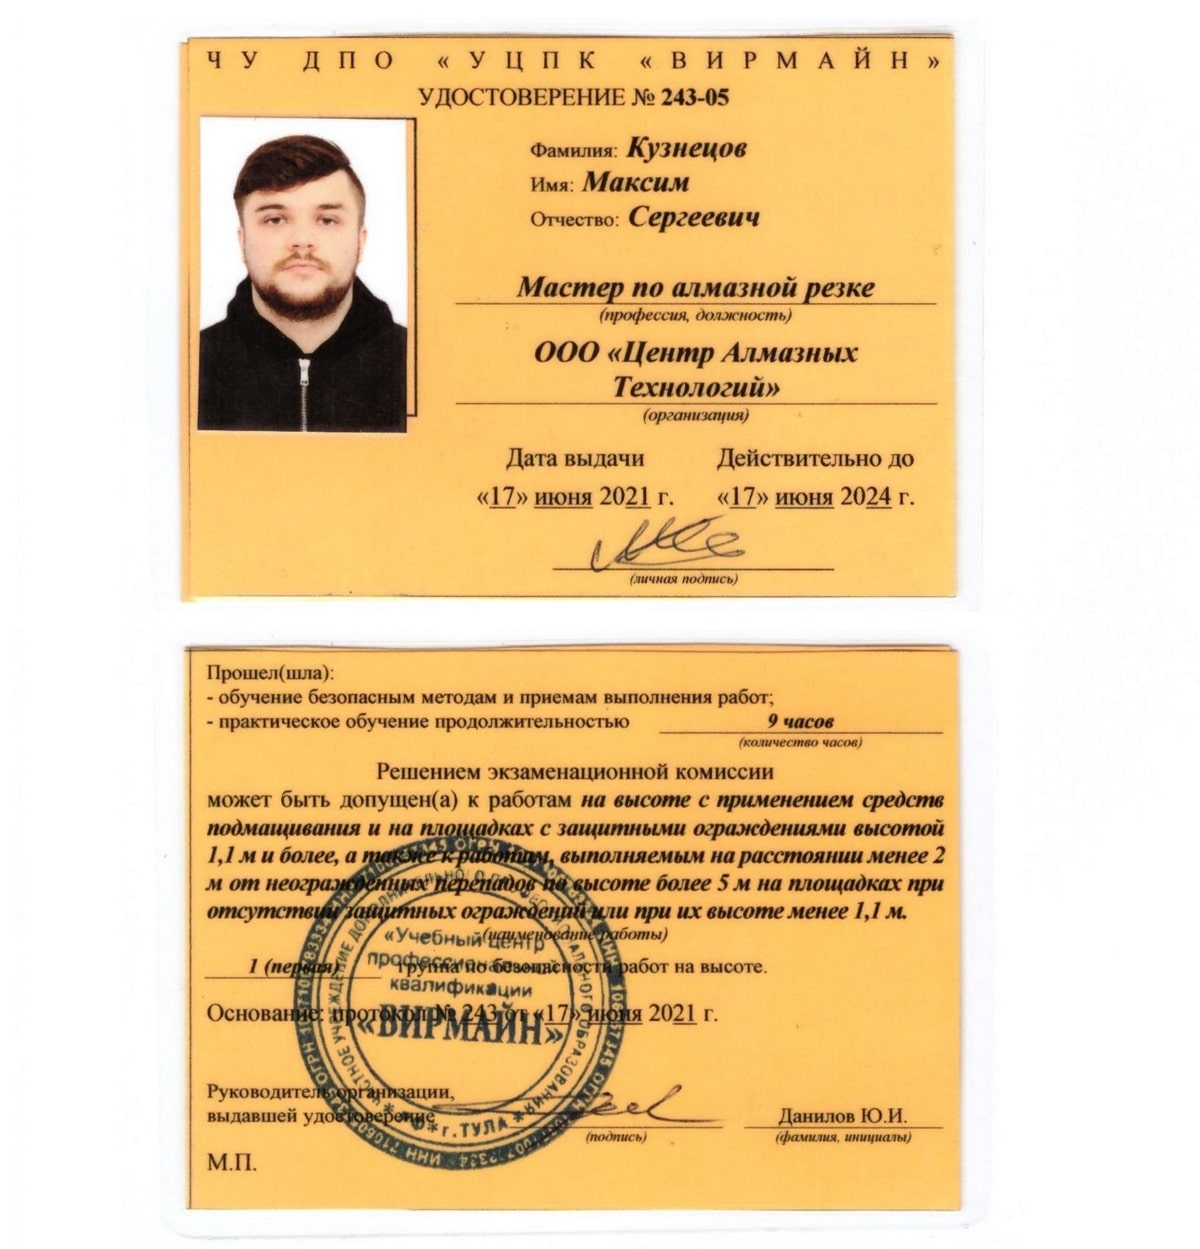 Удостоверение 243-05 сотрудника ЦАТ Максим Кузнецов